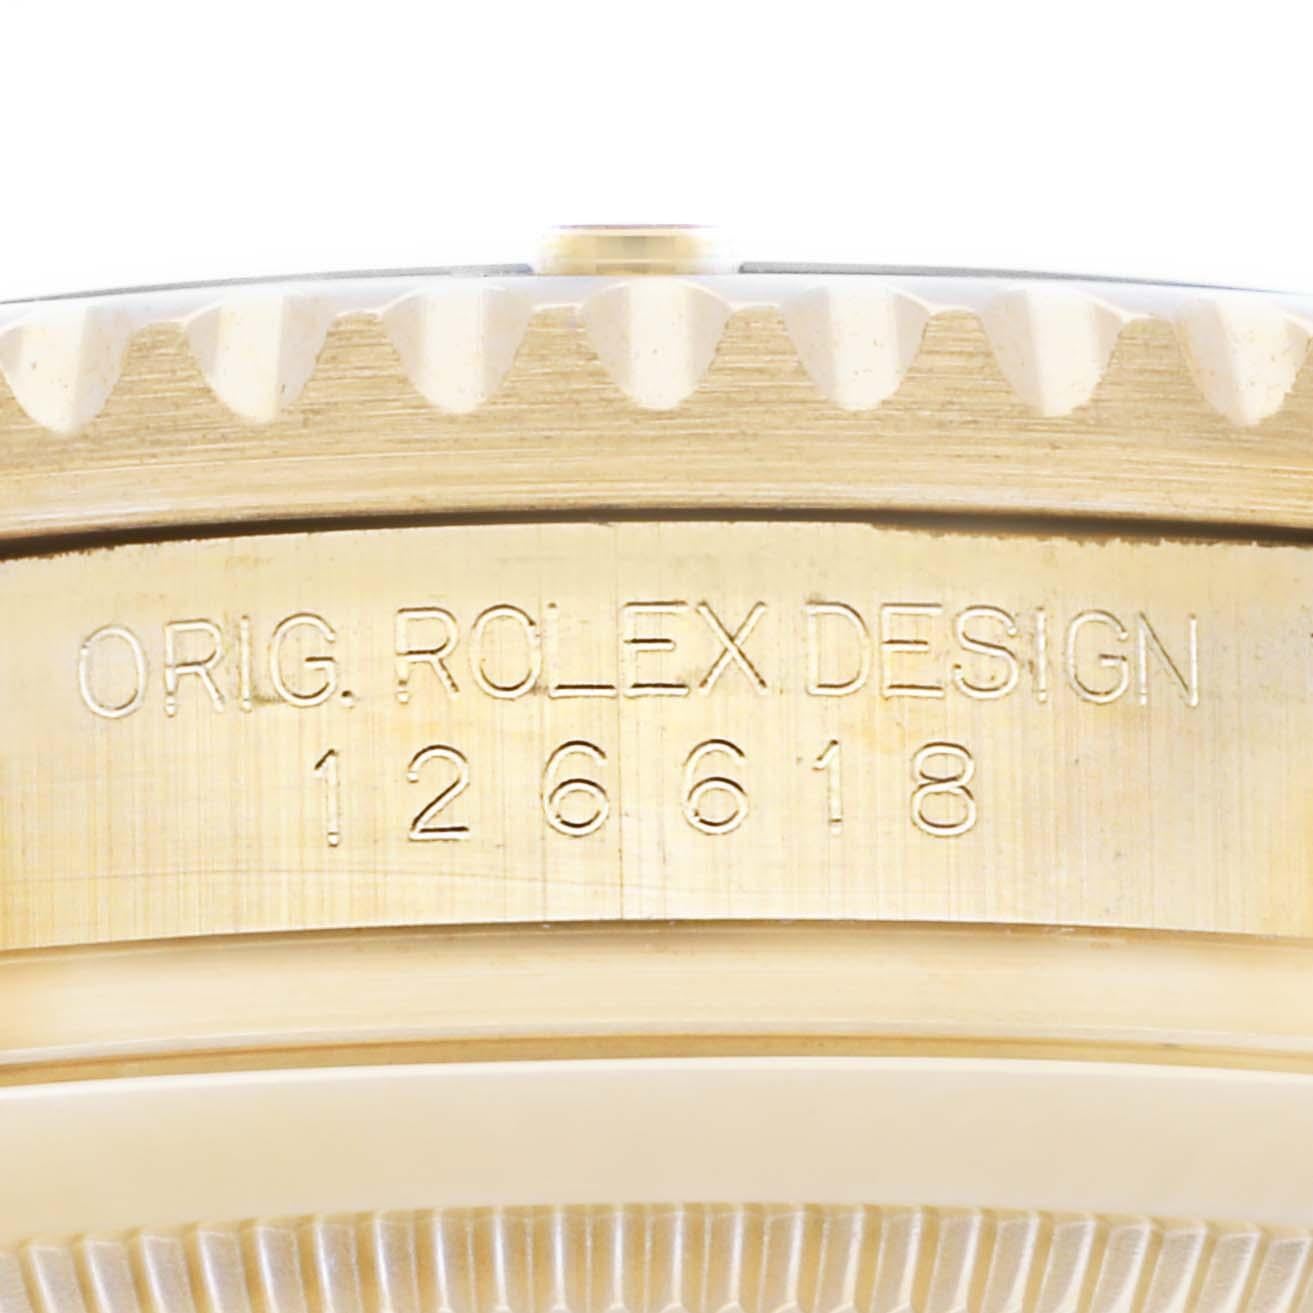 Rolex Submariner Yellow Gold Black Dial Bezel Mens Watch 126618 Box Card. Mouvement à remontage automatique certifié chronomètre. Boîtier en or jaune 18 carats de 41,0 mm de diamètre. Logo Rolex sur une couronne. Lunette tournante unidirectionnelle